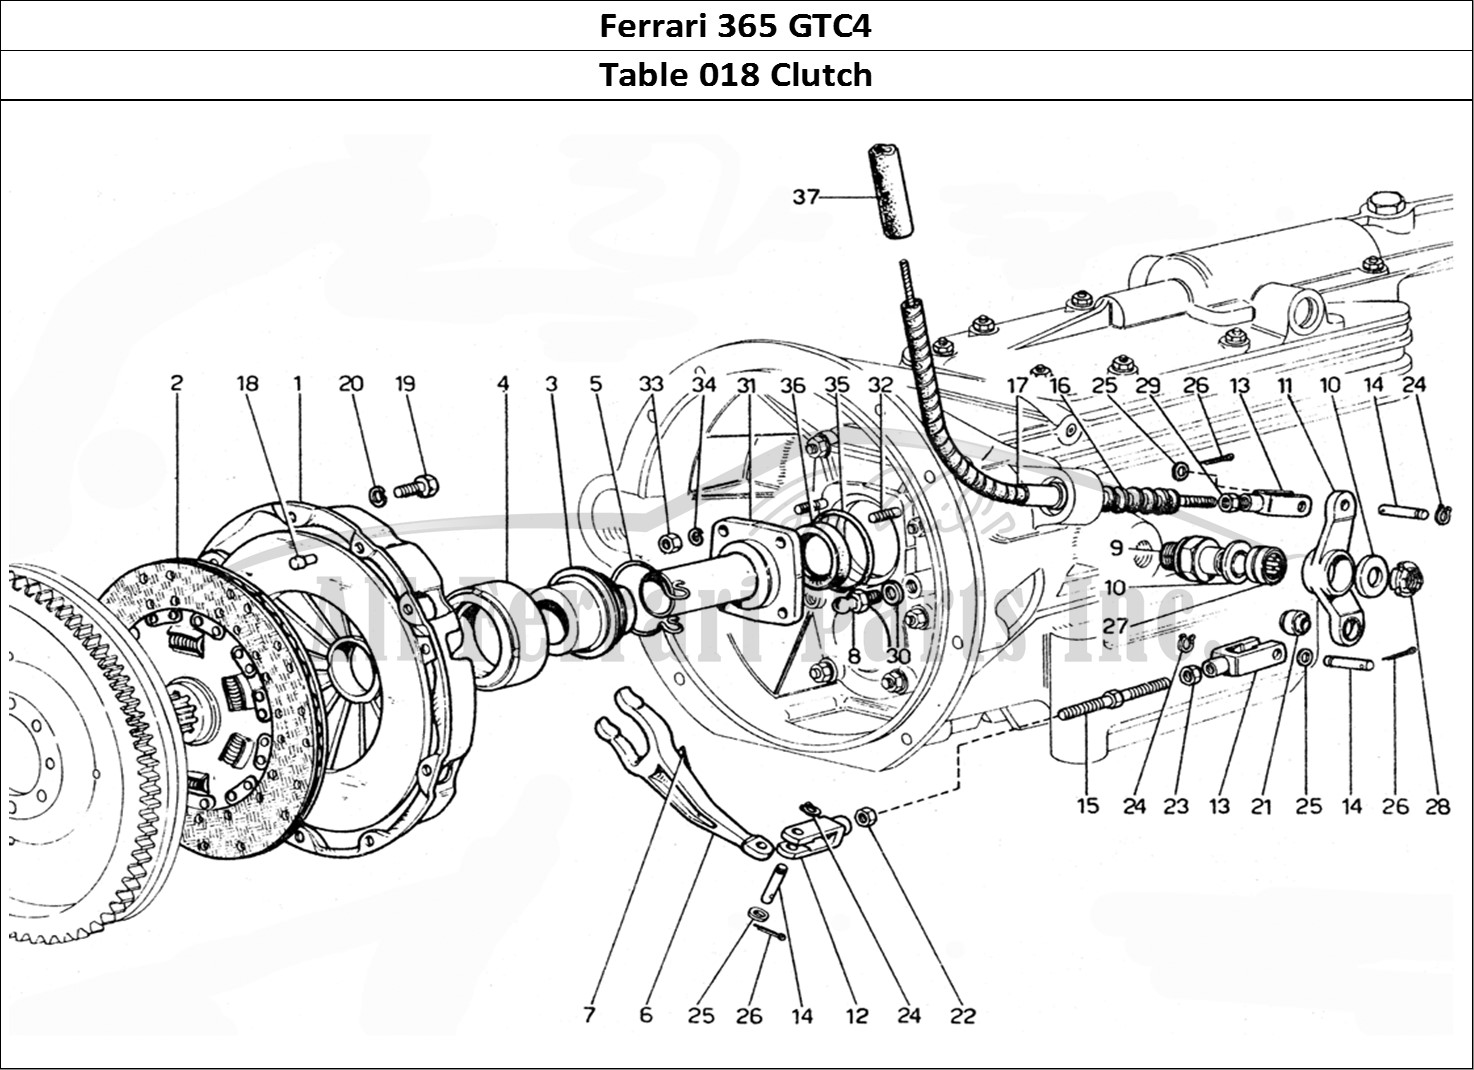 Ferrari Parts Ferrari 365 GTC4 (Mechanical) Page 018 Clutch